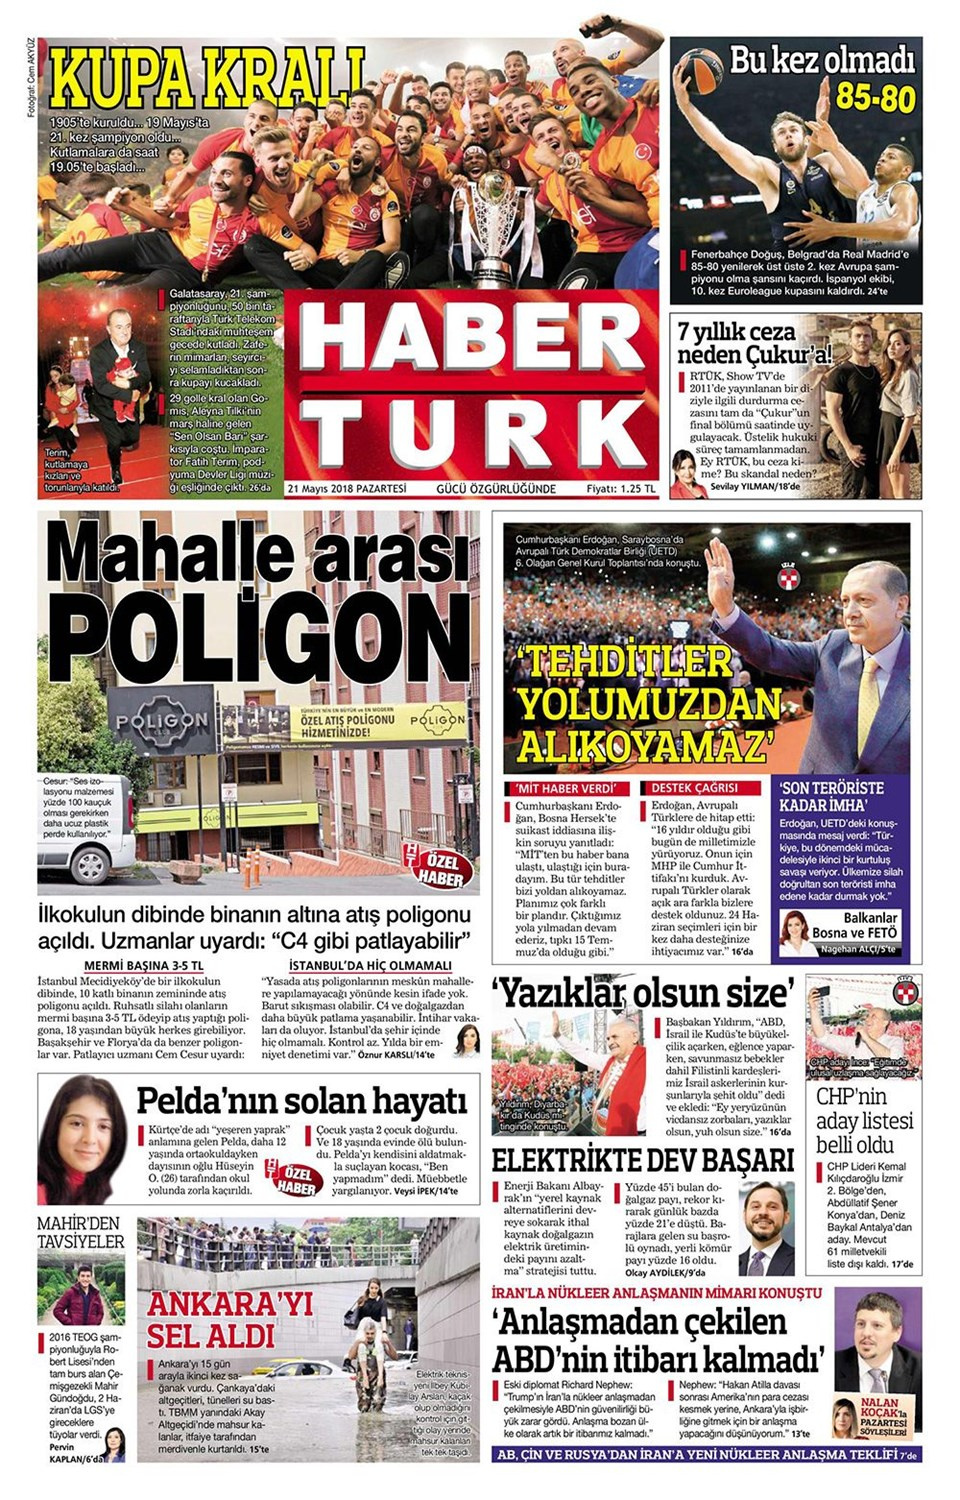 Gazete manşetleri 21 Mayıs 2018 Hürriyet - Sözcü - Fanatik